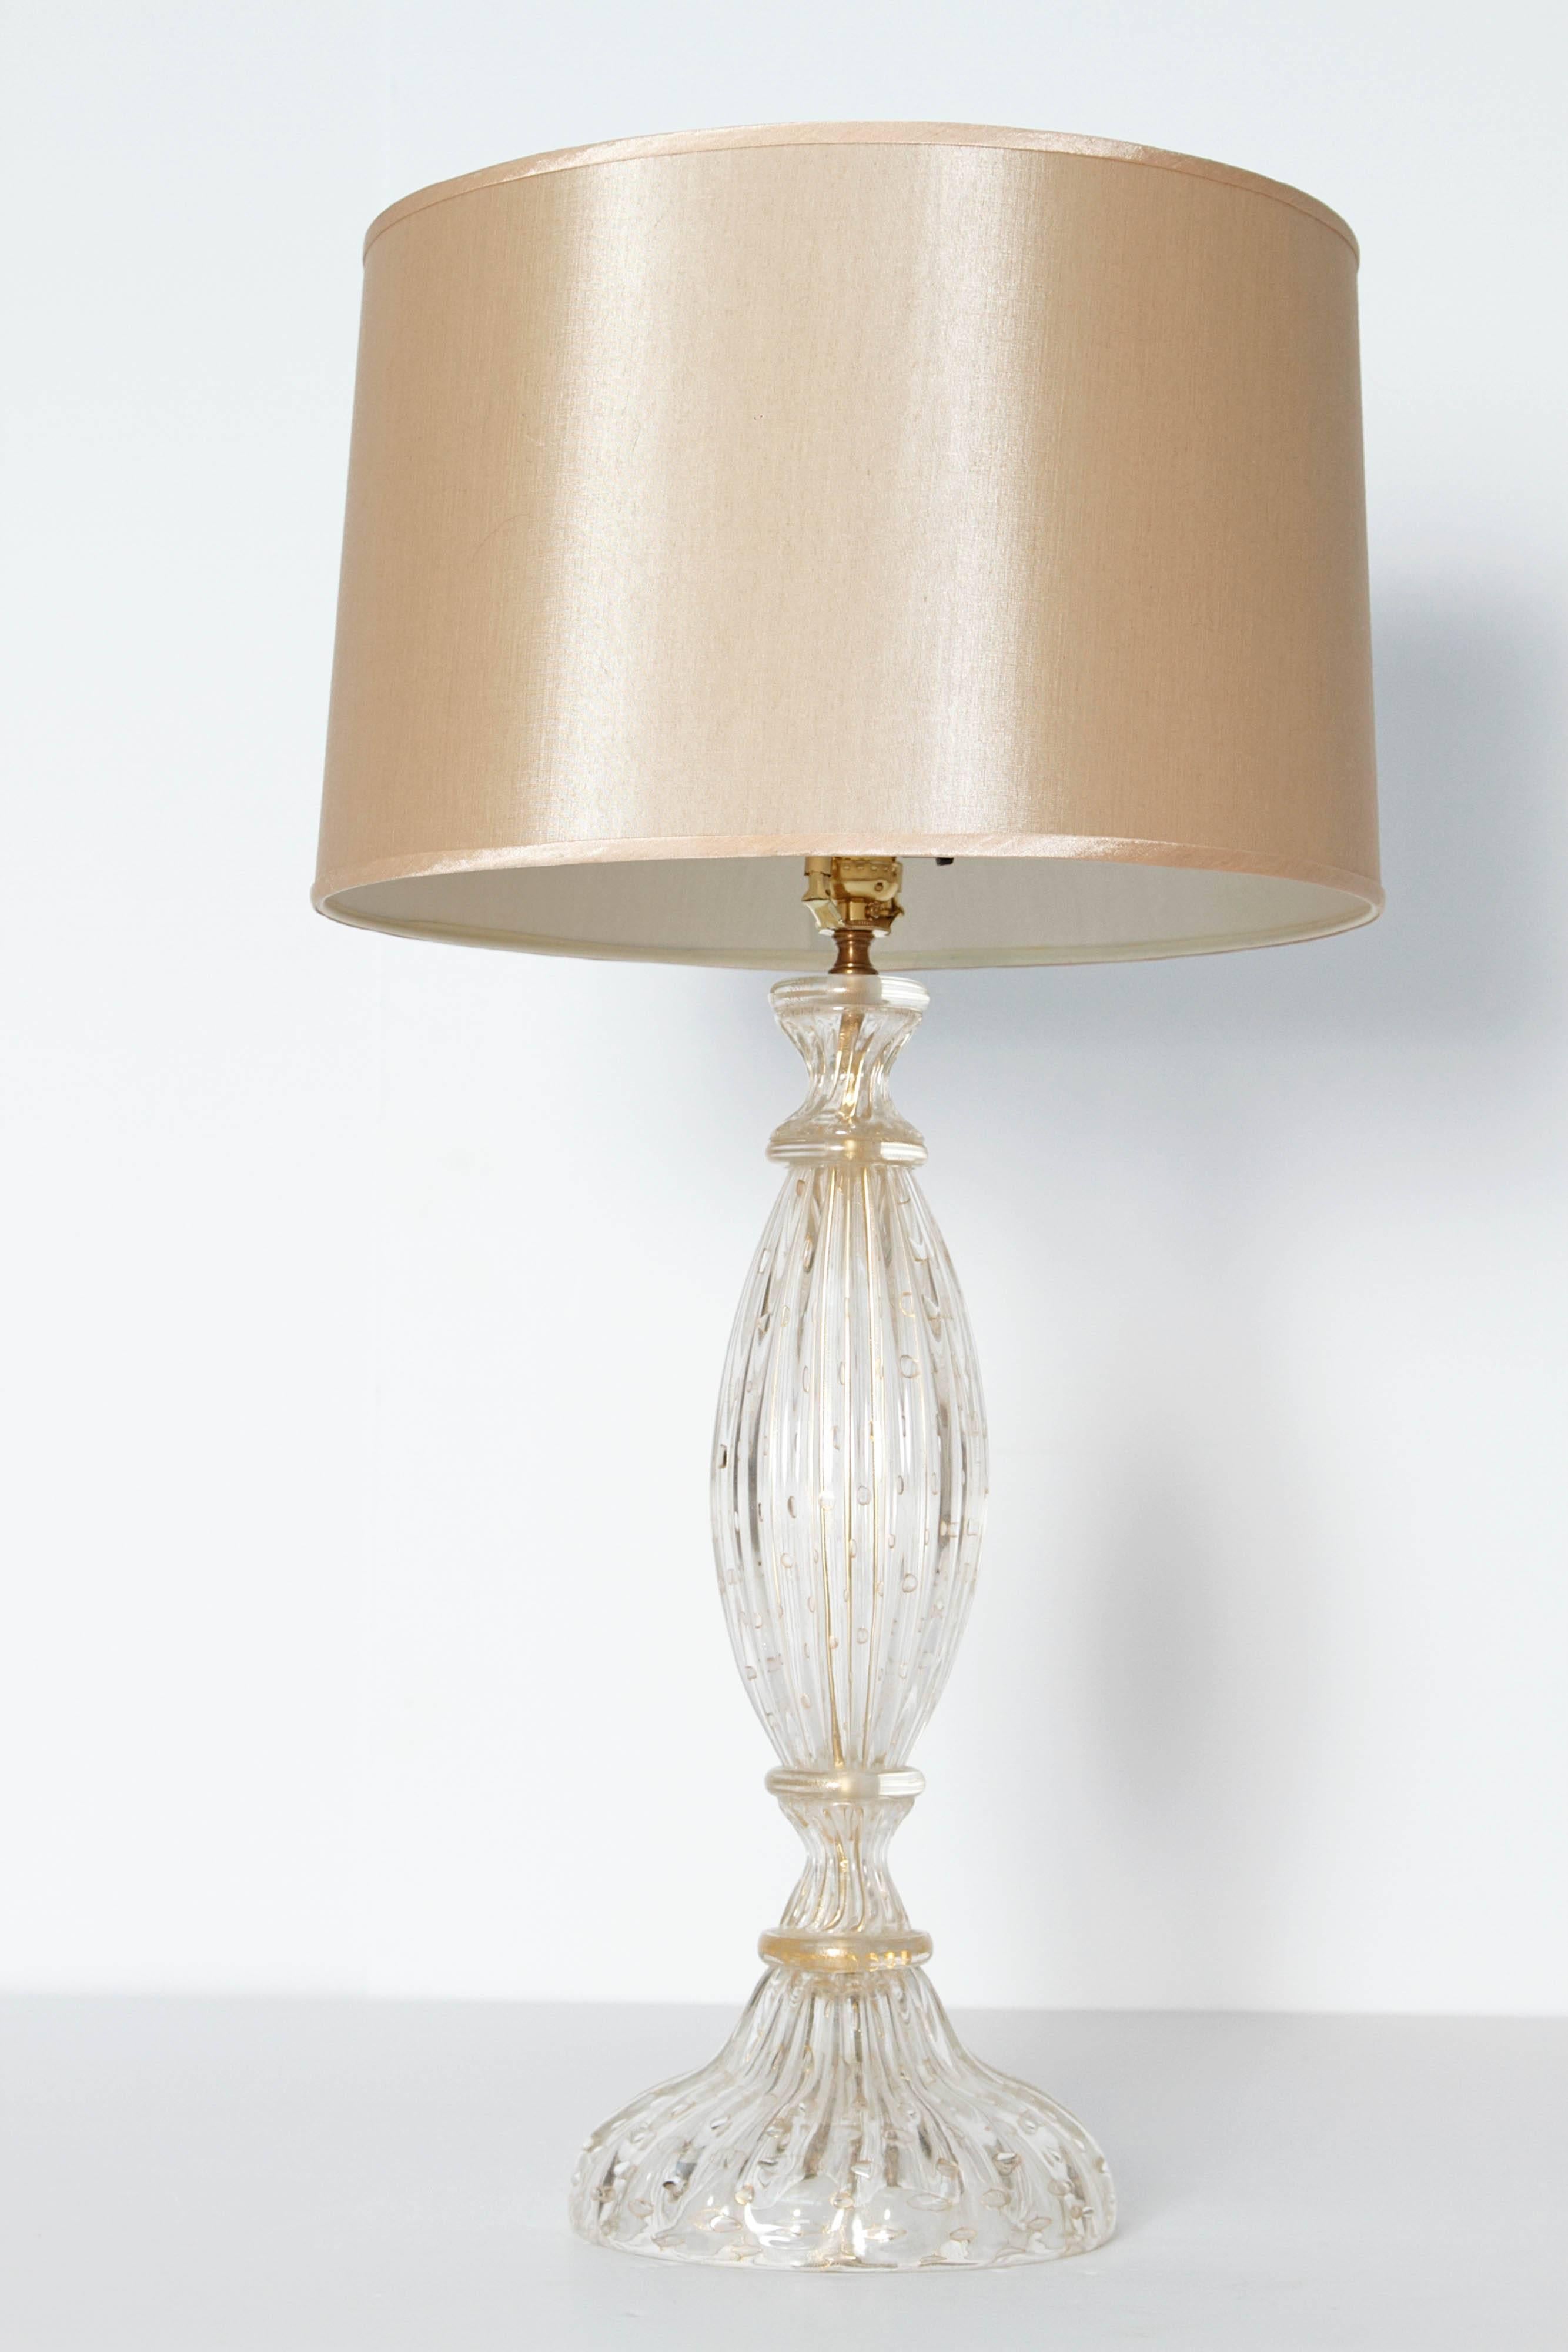 Italian Mid-Century Modern Murano Lamp Attributed to Barovier & Toso